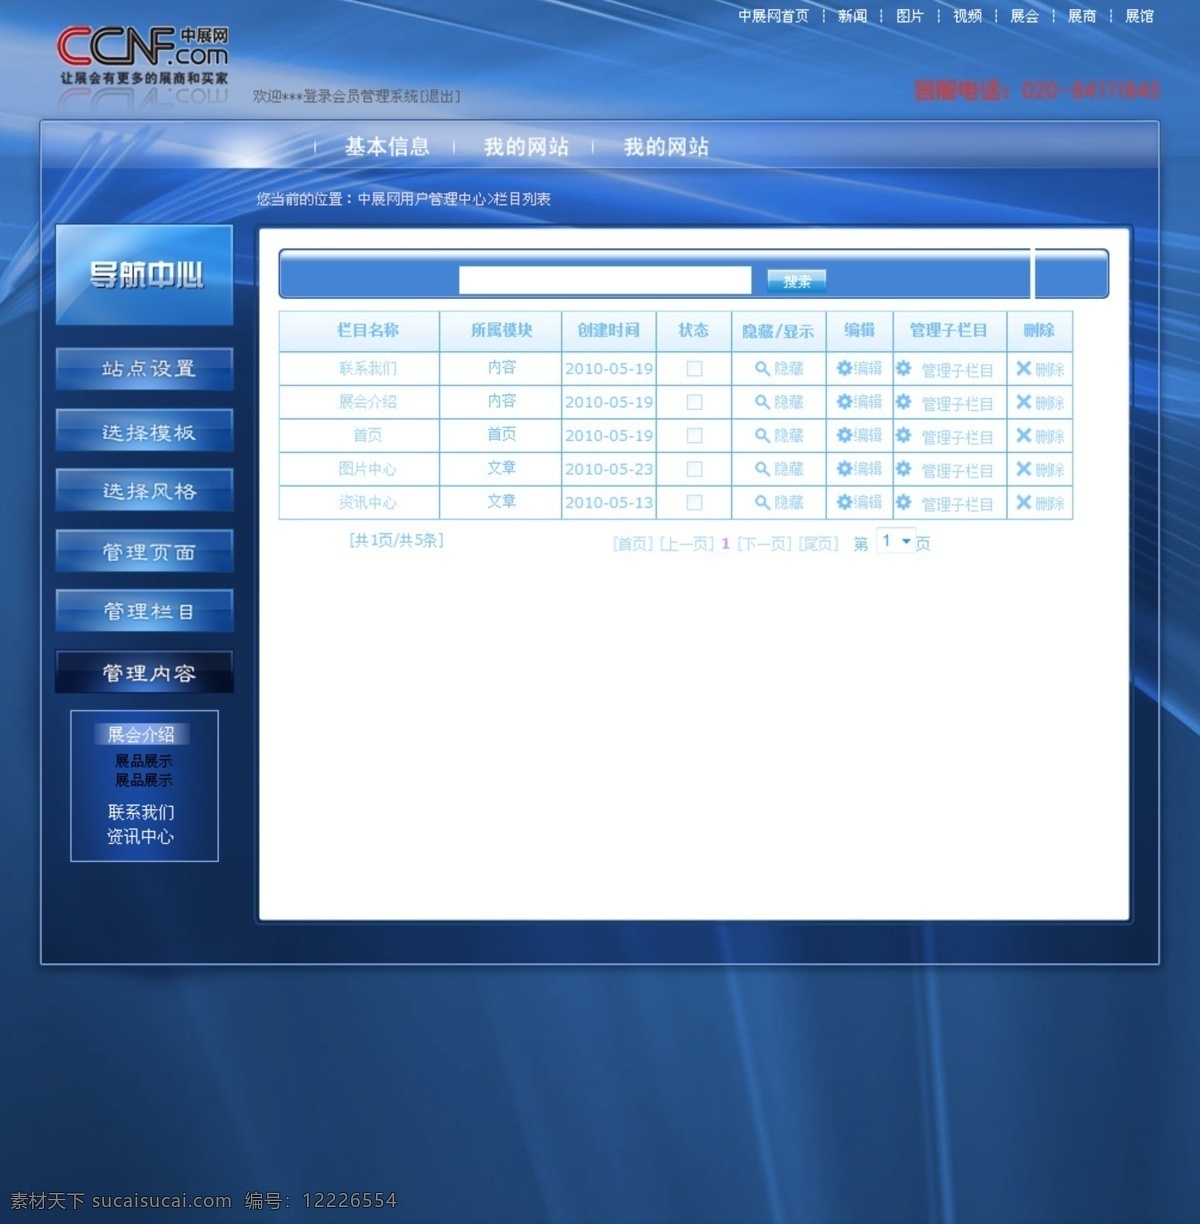 网页设计 中文模板 蓝色会员网页 会员管理中心 管理中心页面 蓝色大气网 后台管理页面 web 界面设计 网页素材 其他网页素材